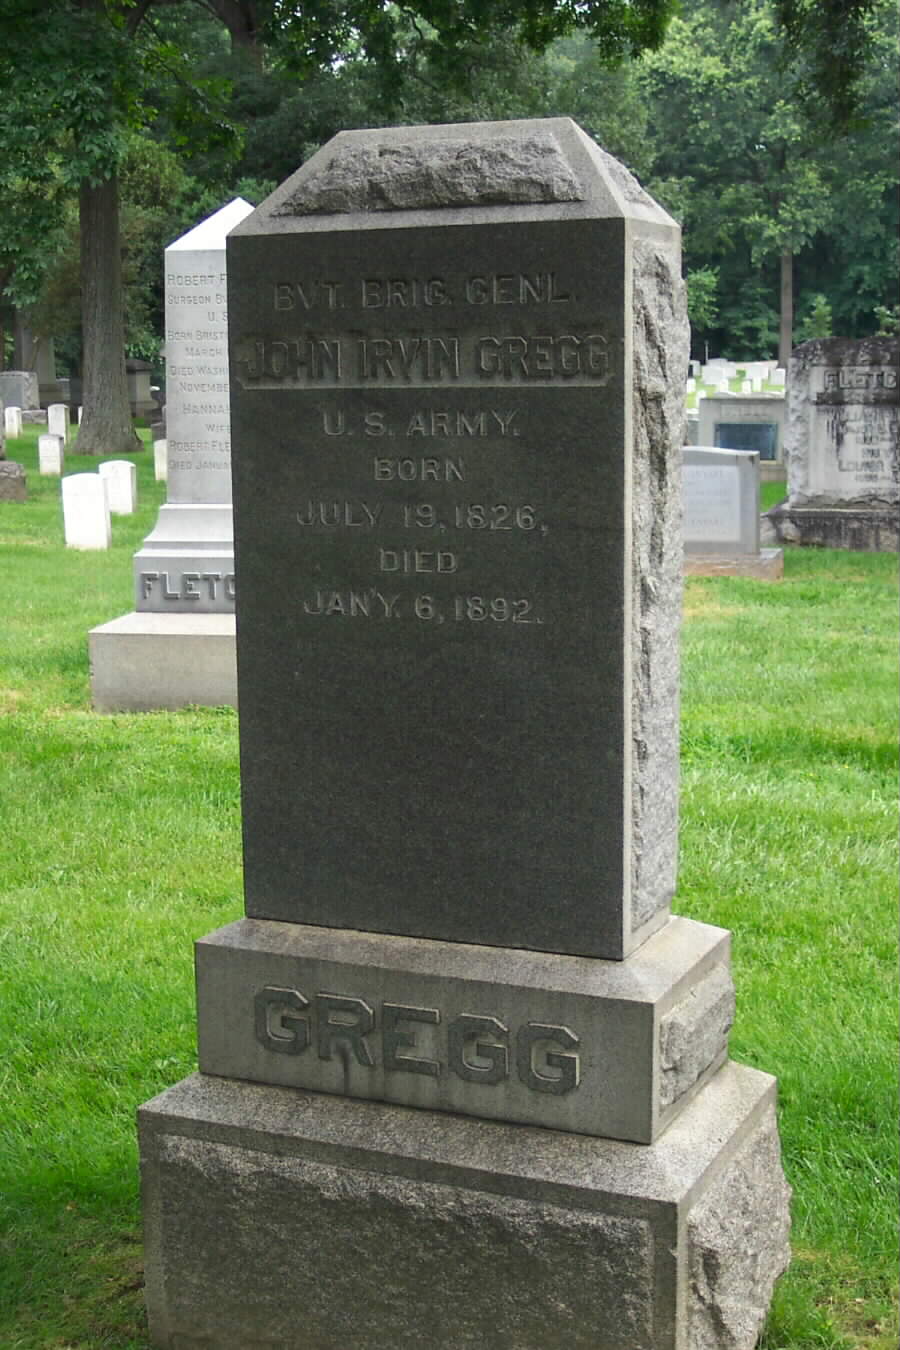 jigregg-gravesite-section1-062803